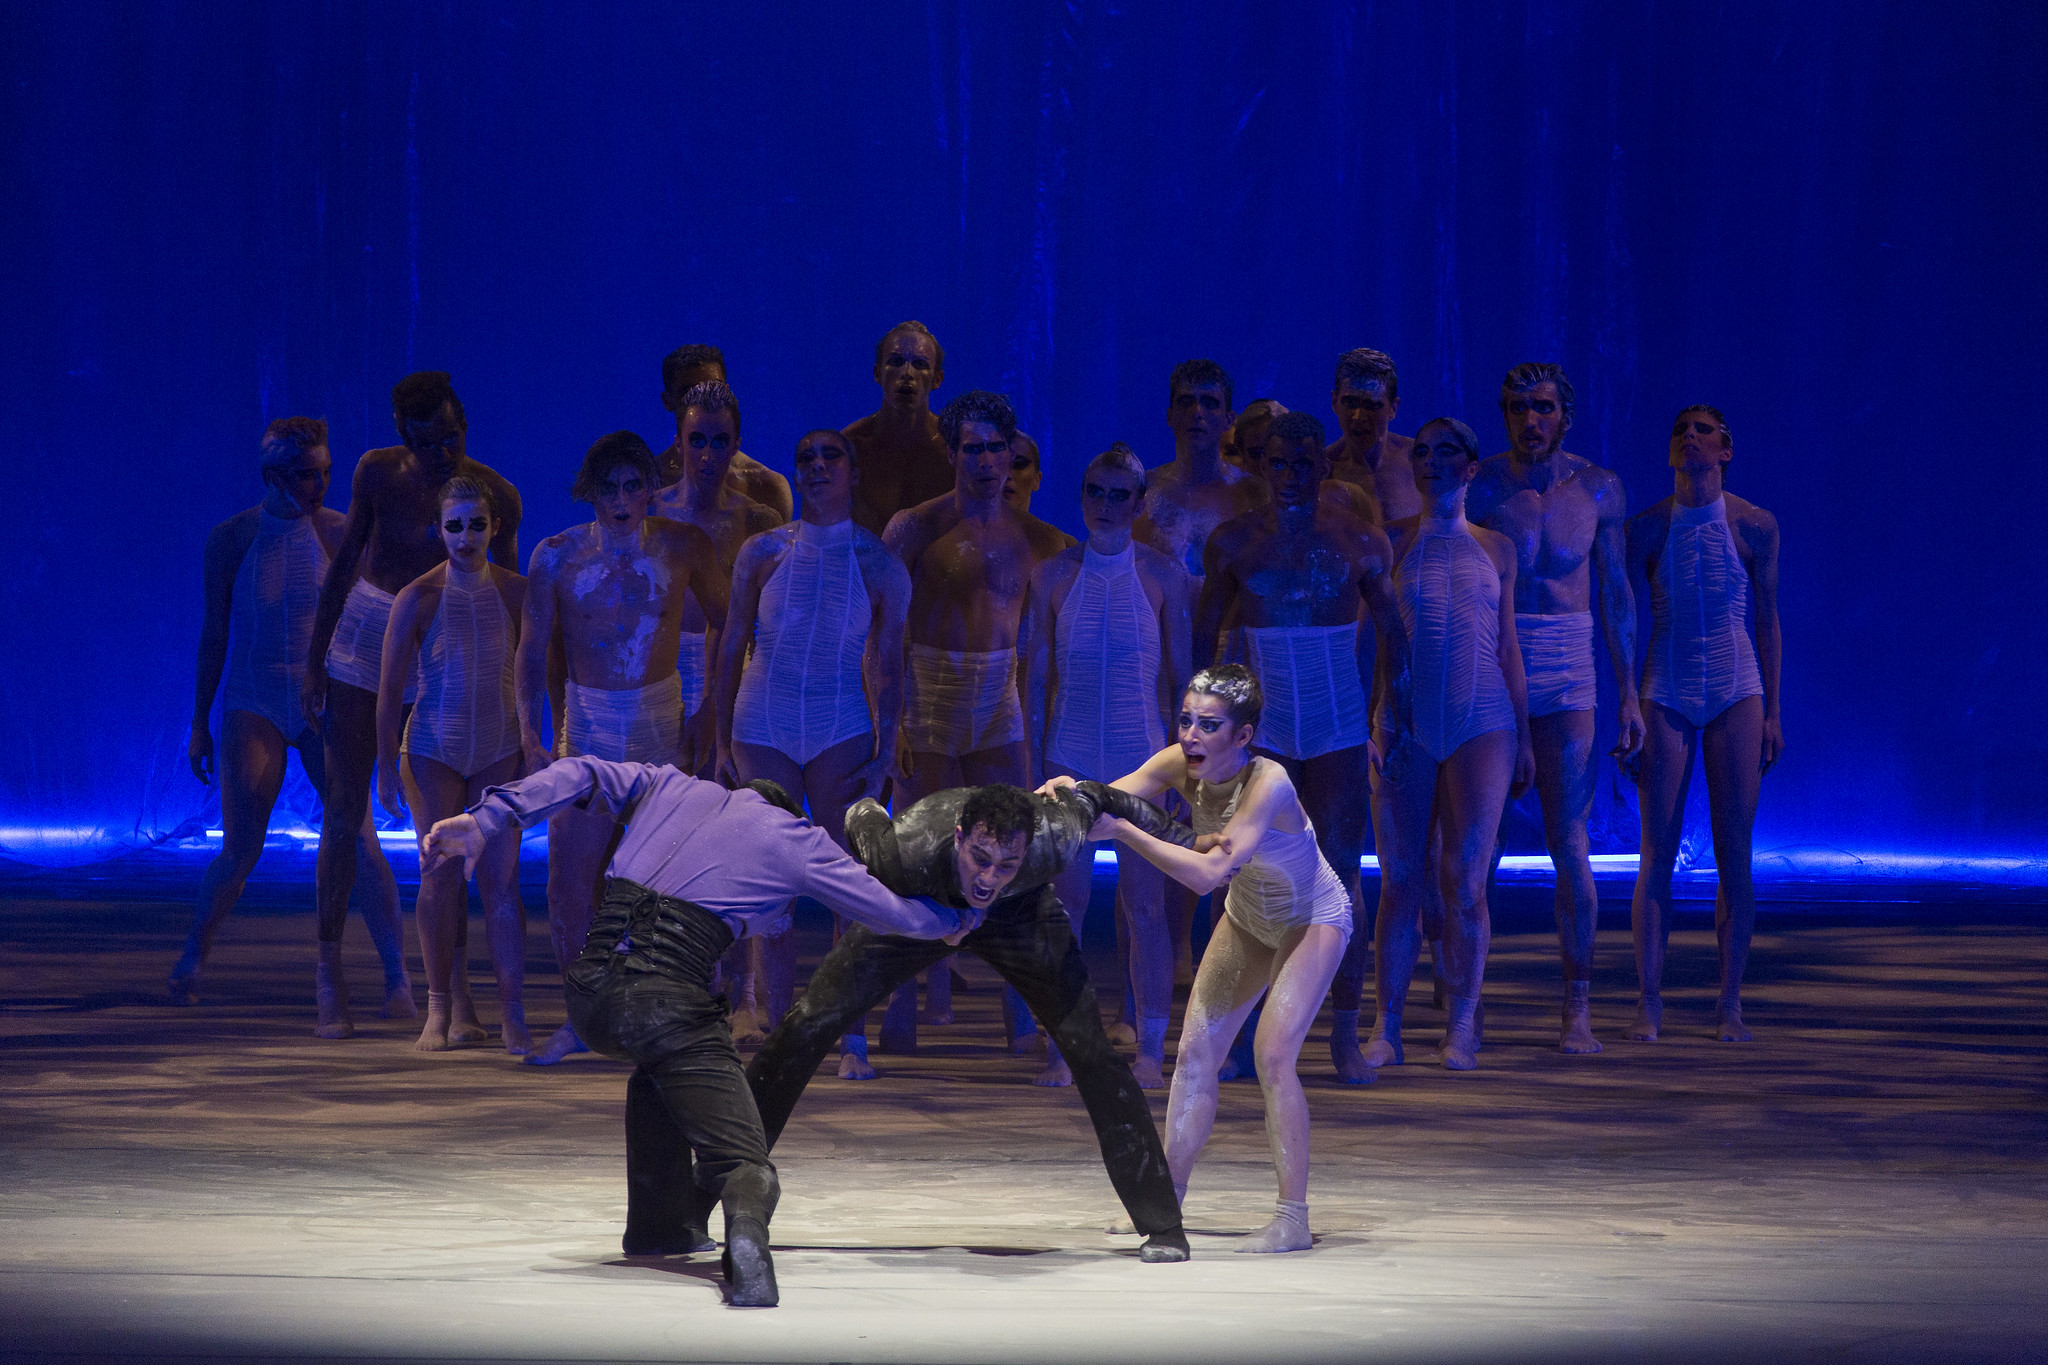 Balé Teatro Guaíra apresenta “O Lago dos Cisnes” nos dias 24 e 25 de julho